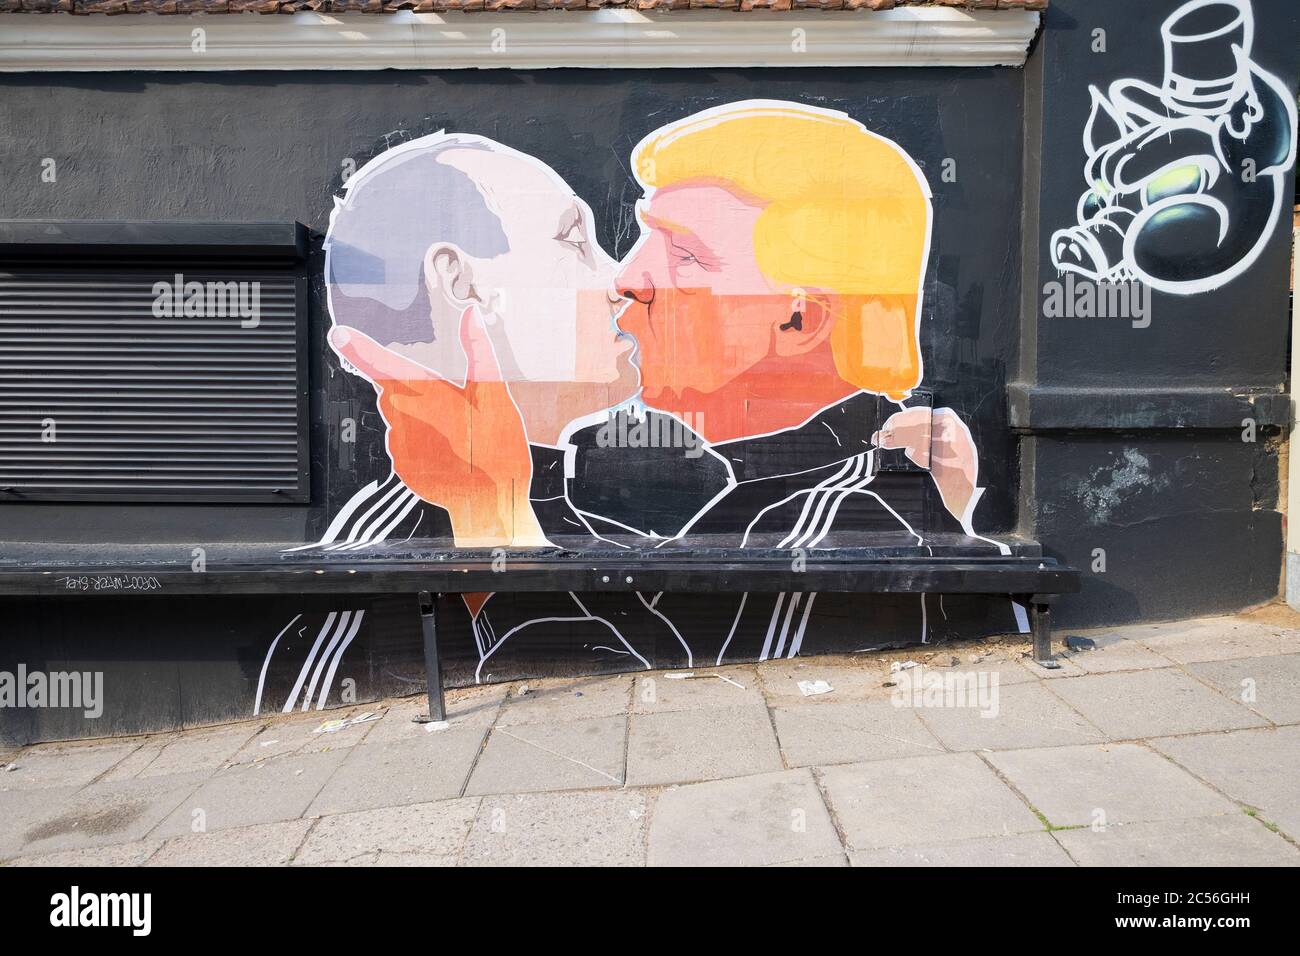 Das Original Donald Trump, Wladimir Putin küssen Wandbild vor dem Keulė Rūkė Restaurant. Aufgenommen im Mai 2016 in Vilnius, Litauen. Stockfoto